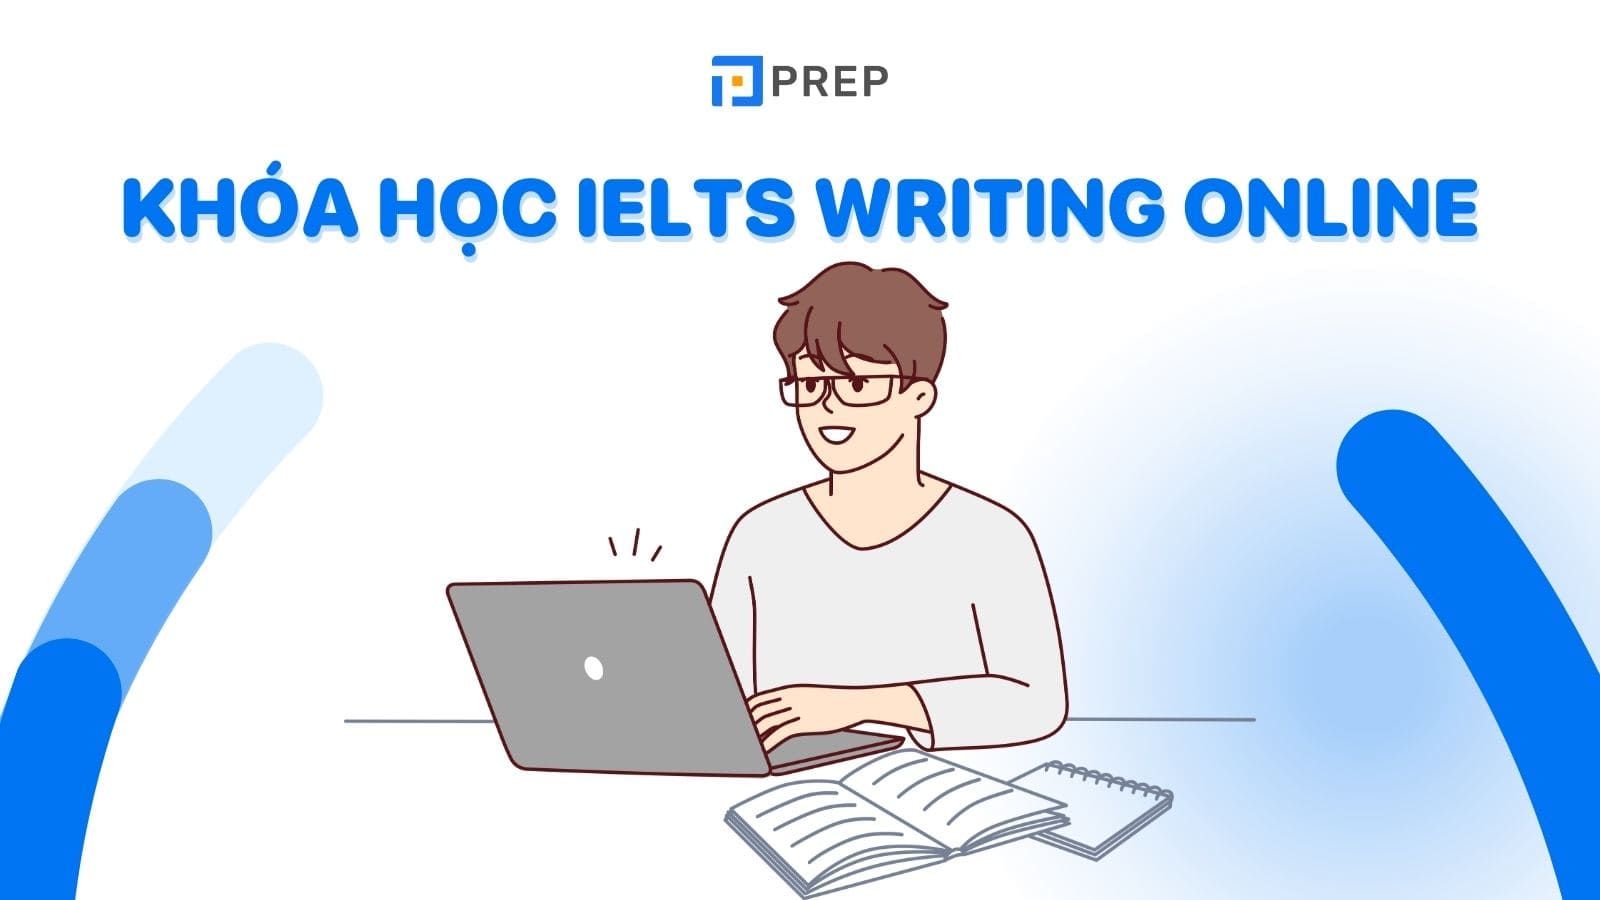 khoa-hoc-ielts-writing-online.jpg